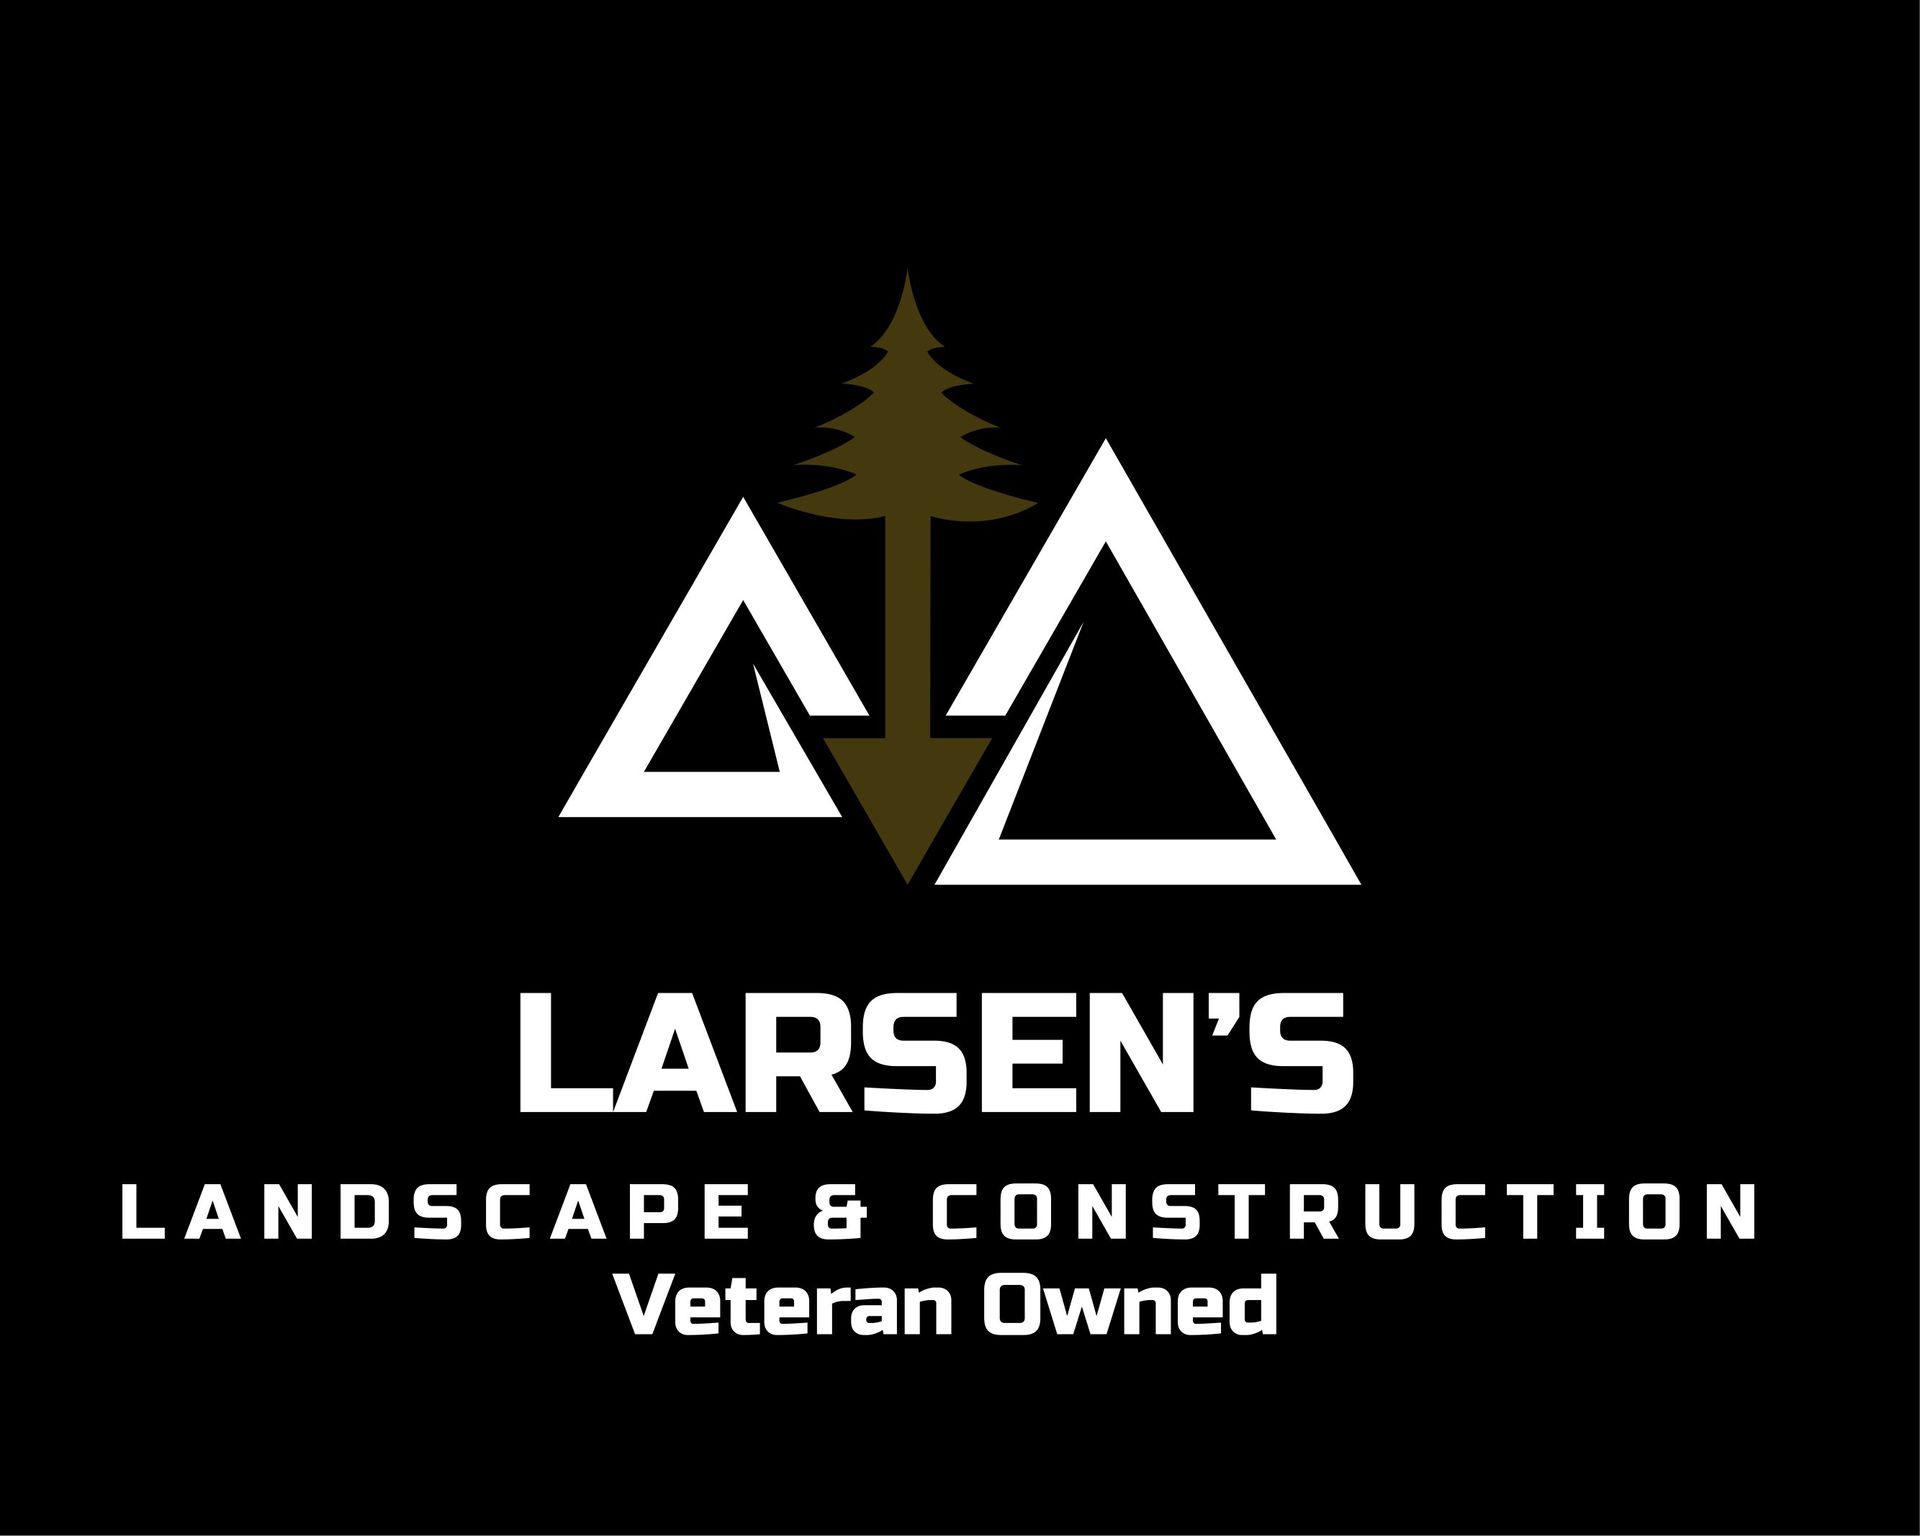 Larsen's business logo